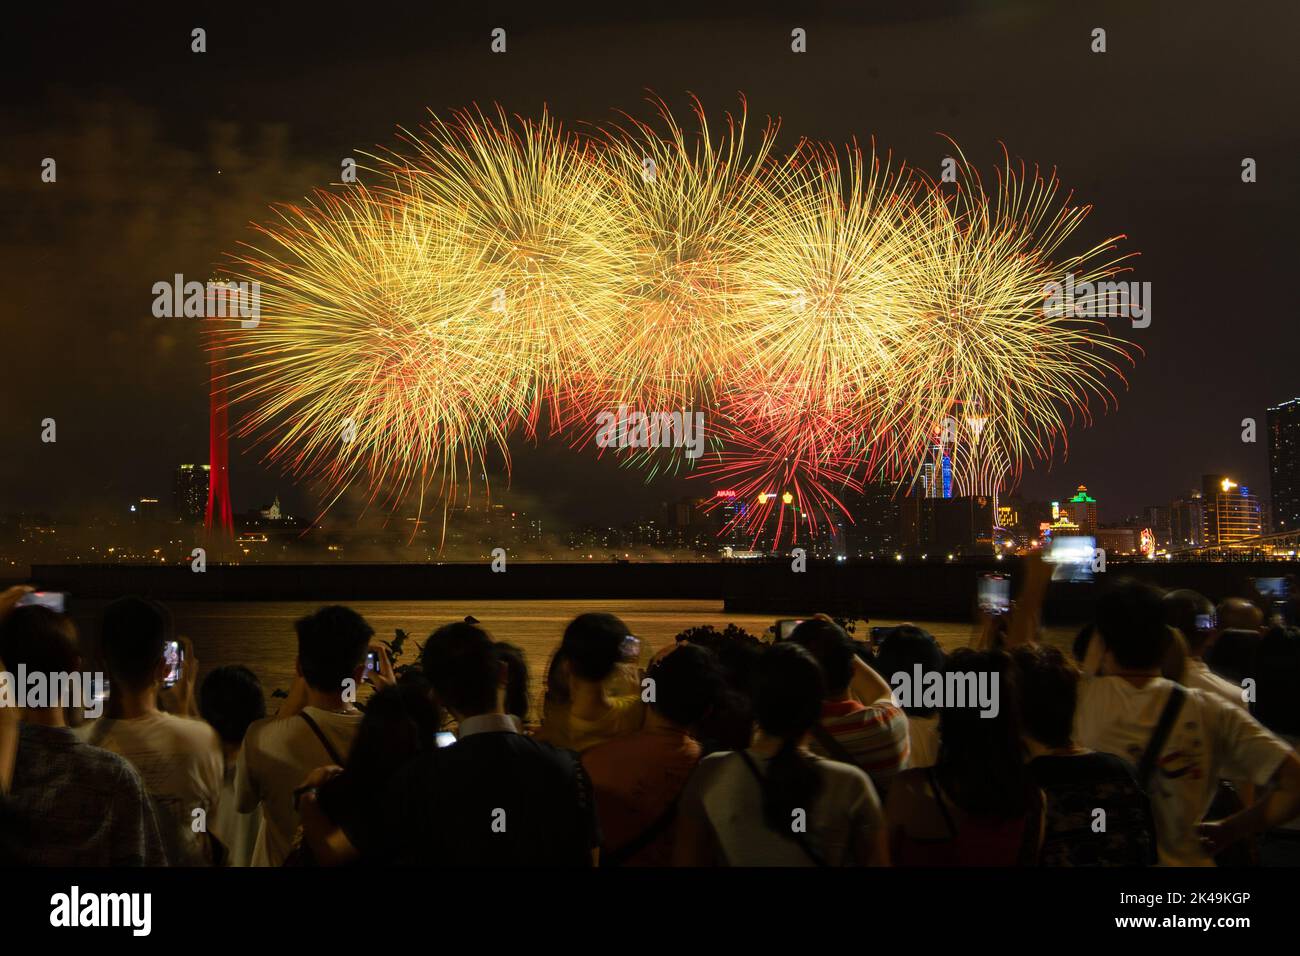 Macao, Chine. 1st octobre 2022. Un spectacle de feu d'artifice a lieu pour célébrer le 73rd anniversaire de la fondation de la République populaire de Chine à Macao, dans le sud de la Chine, le 1 octobre 2022. Crédit: Cheong Kam Ka/Xinhua/Alay Live News Banque D'Images